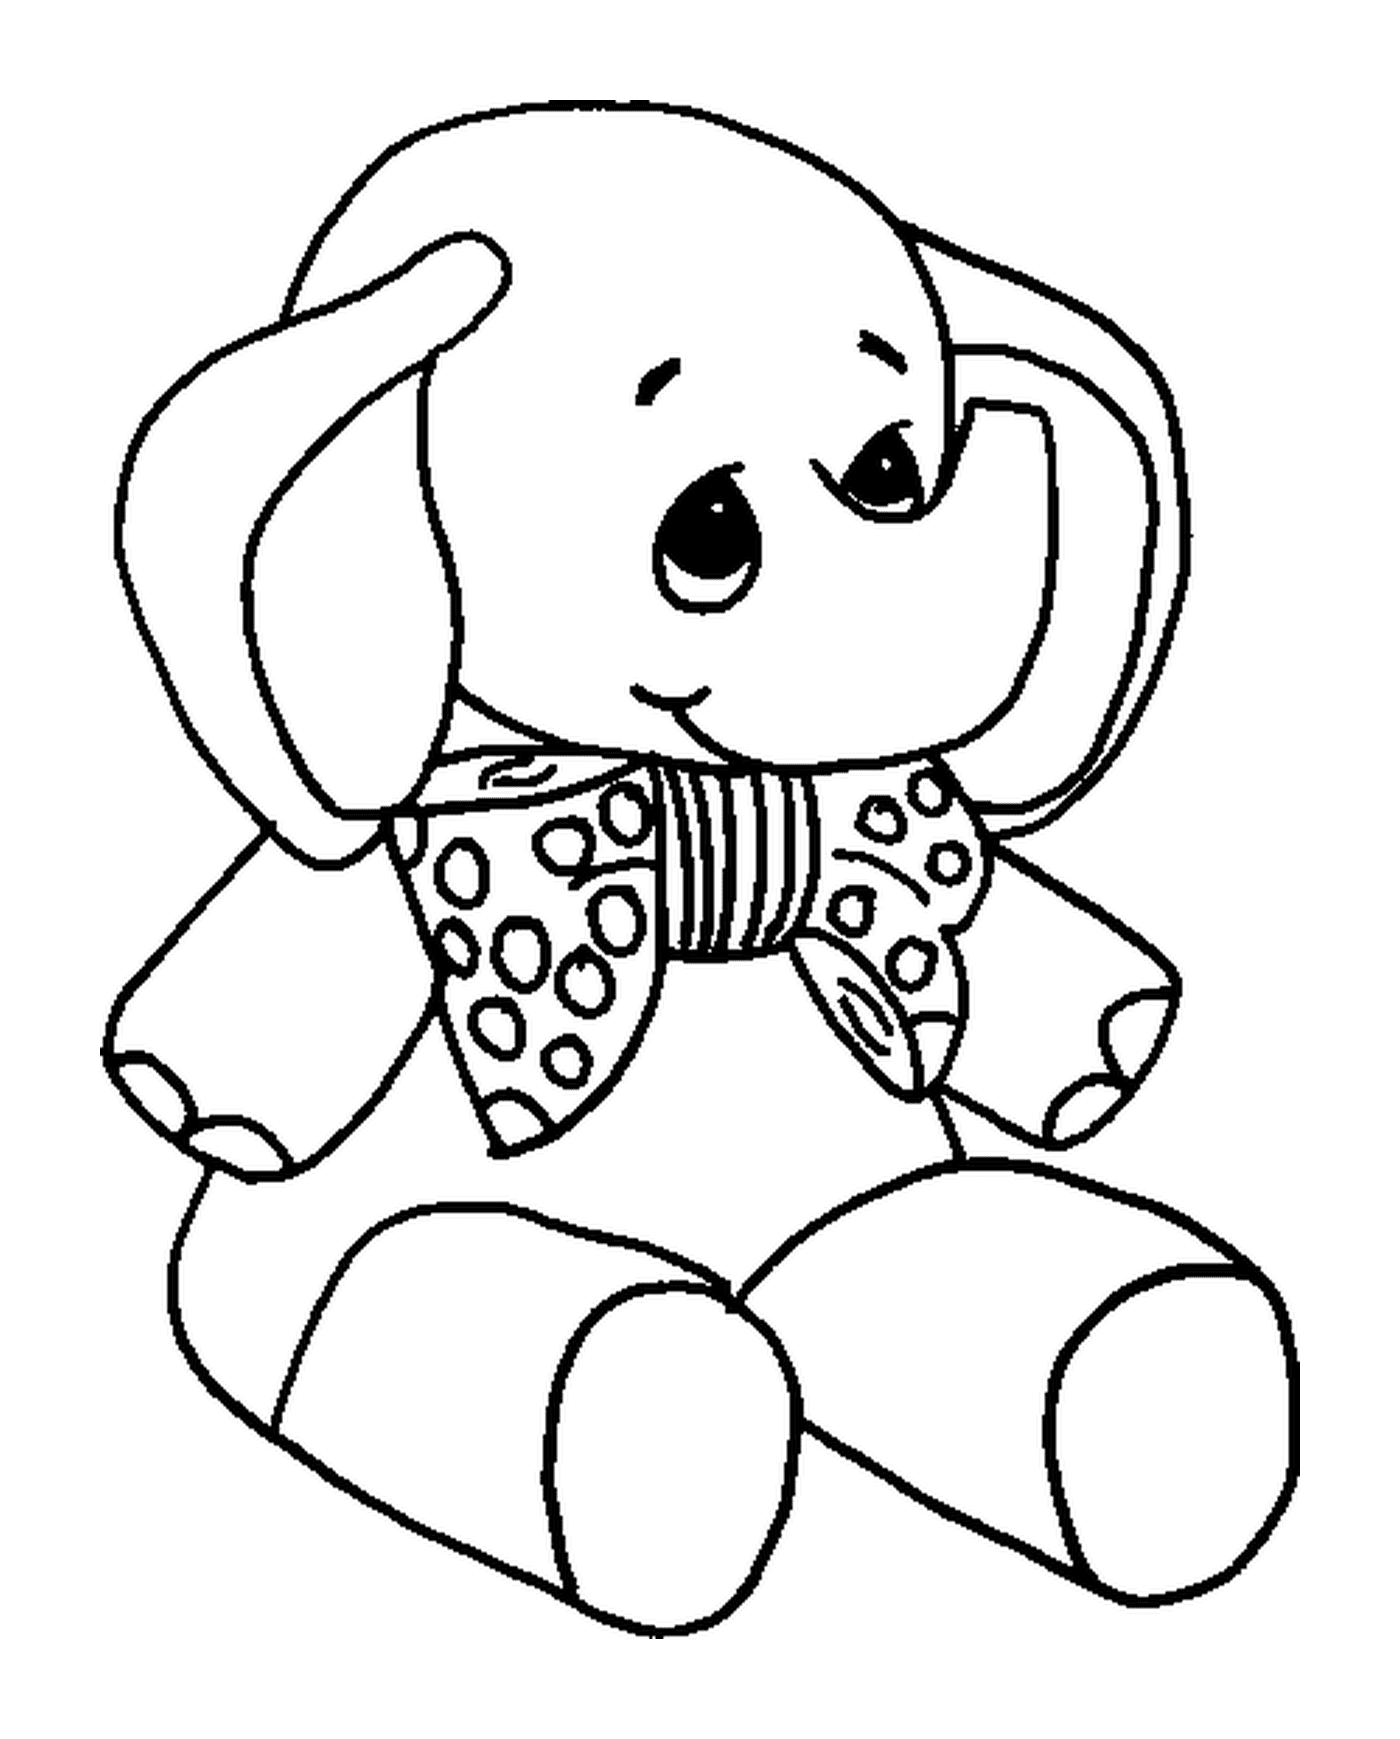  An elephant teddy 